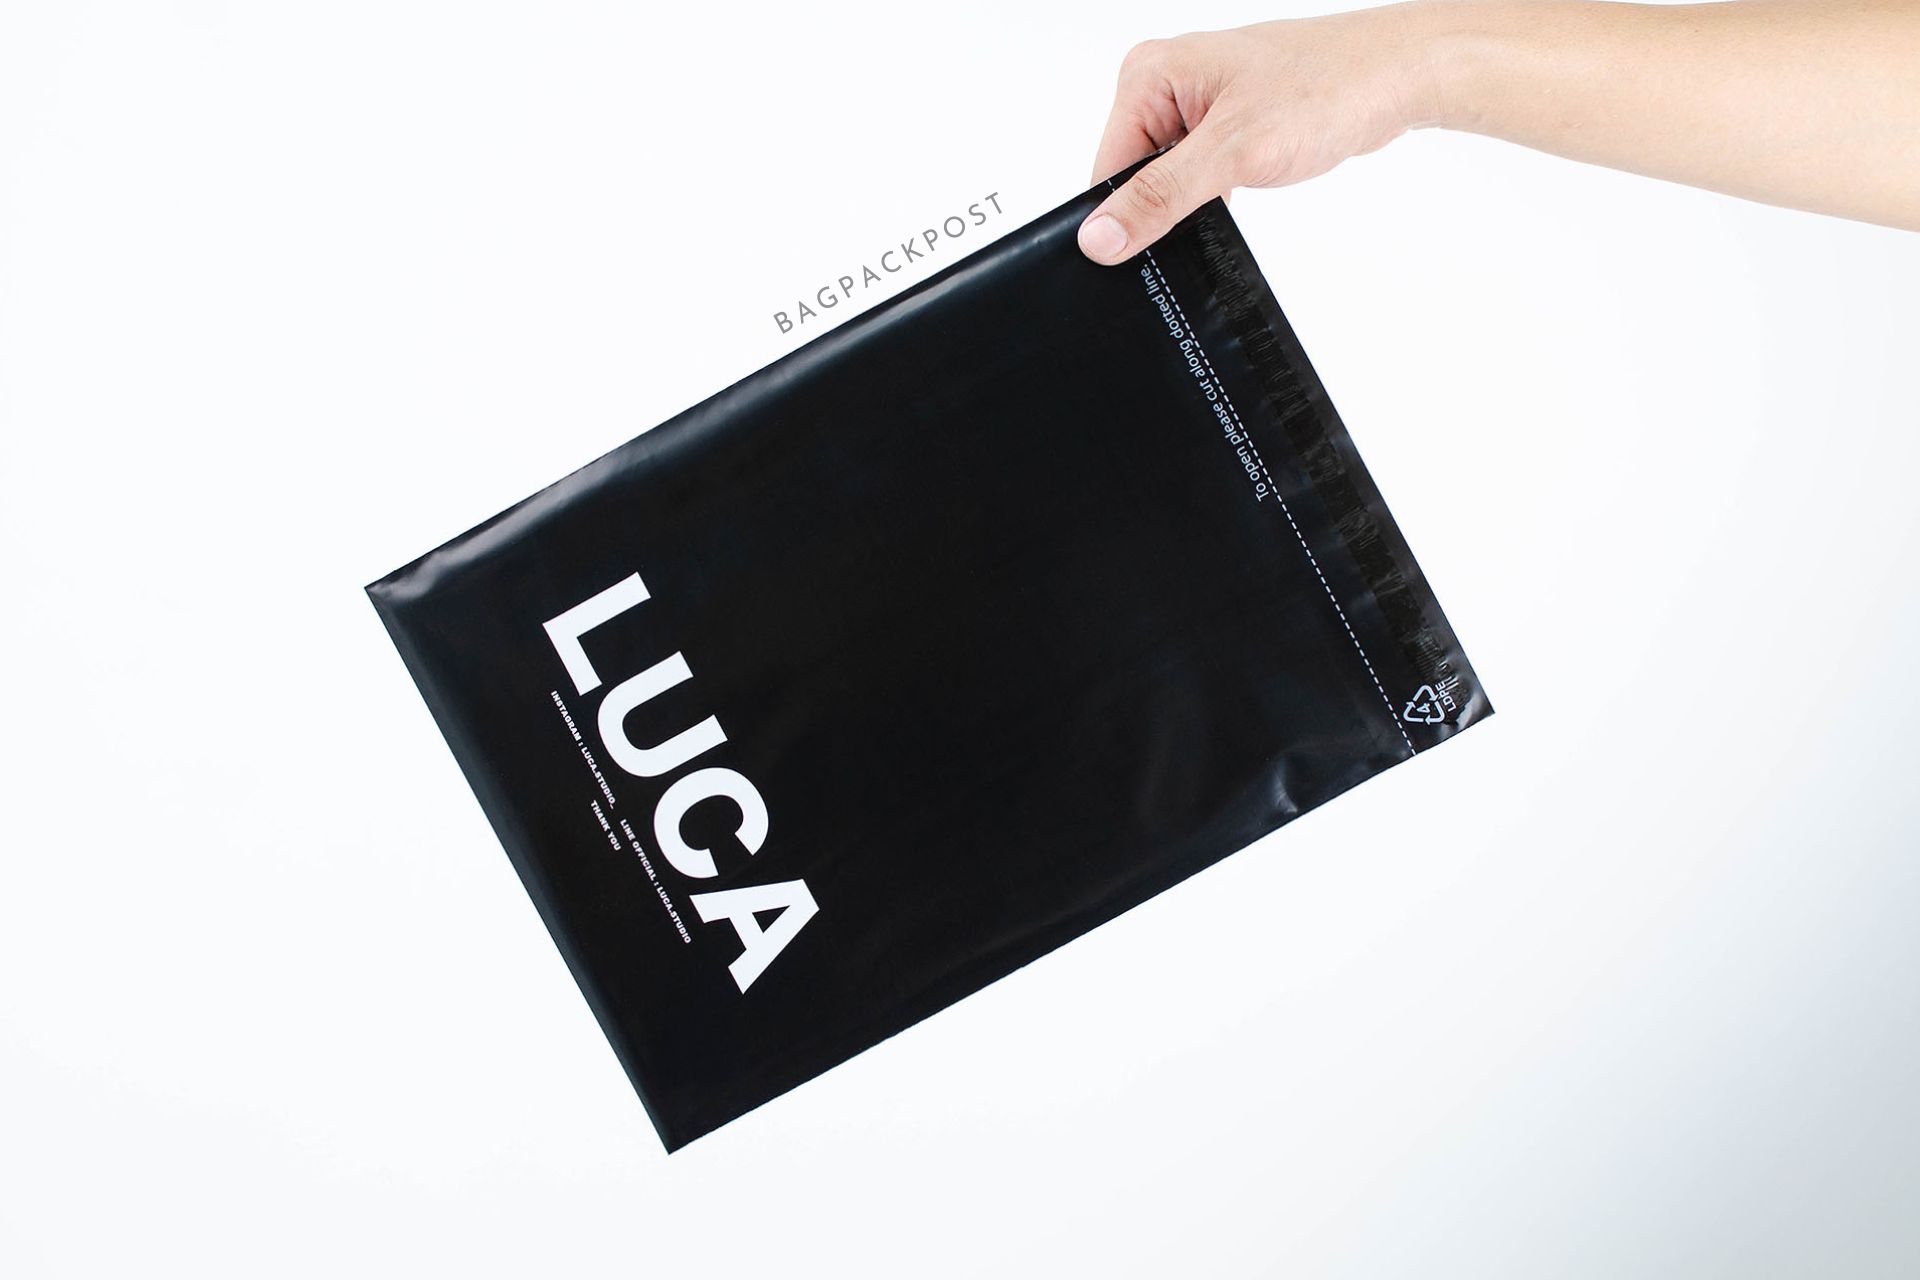 ผลิตถุงไปรษณีย์ ถุงพัสดุ ซองไปรษณีย์พิมพ์ลาย Luca ซองไปรษณีย์สีดำ ถุงไปรษณีย์พิมพ์ลาย 2 BagPackPost